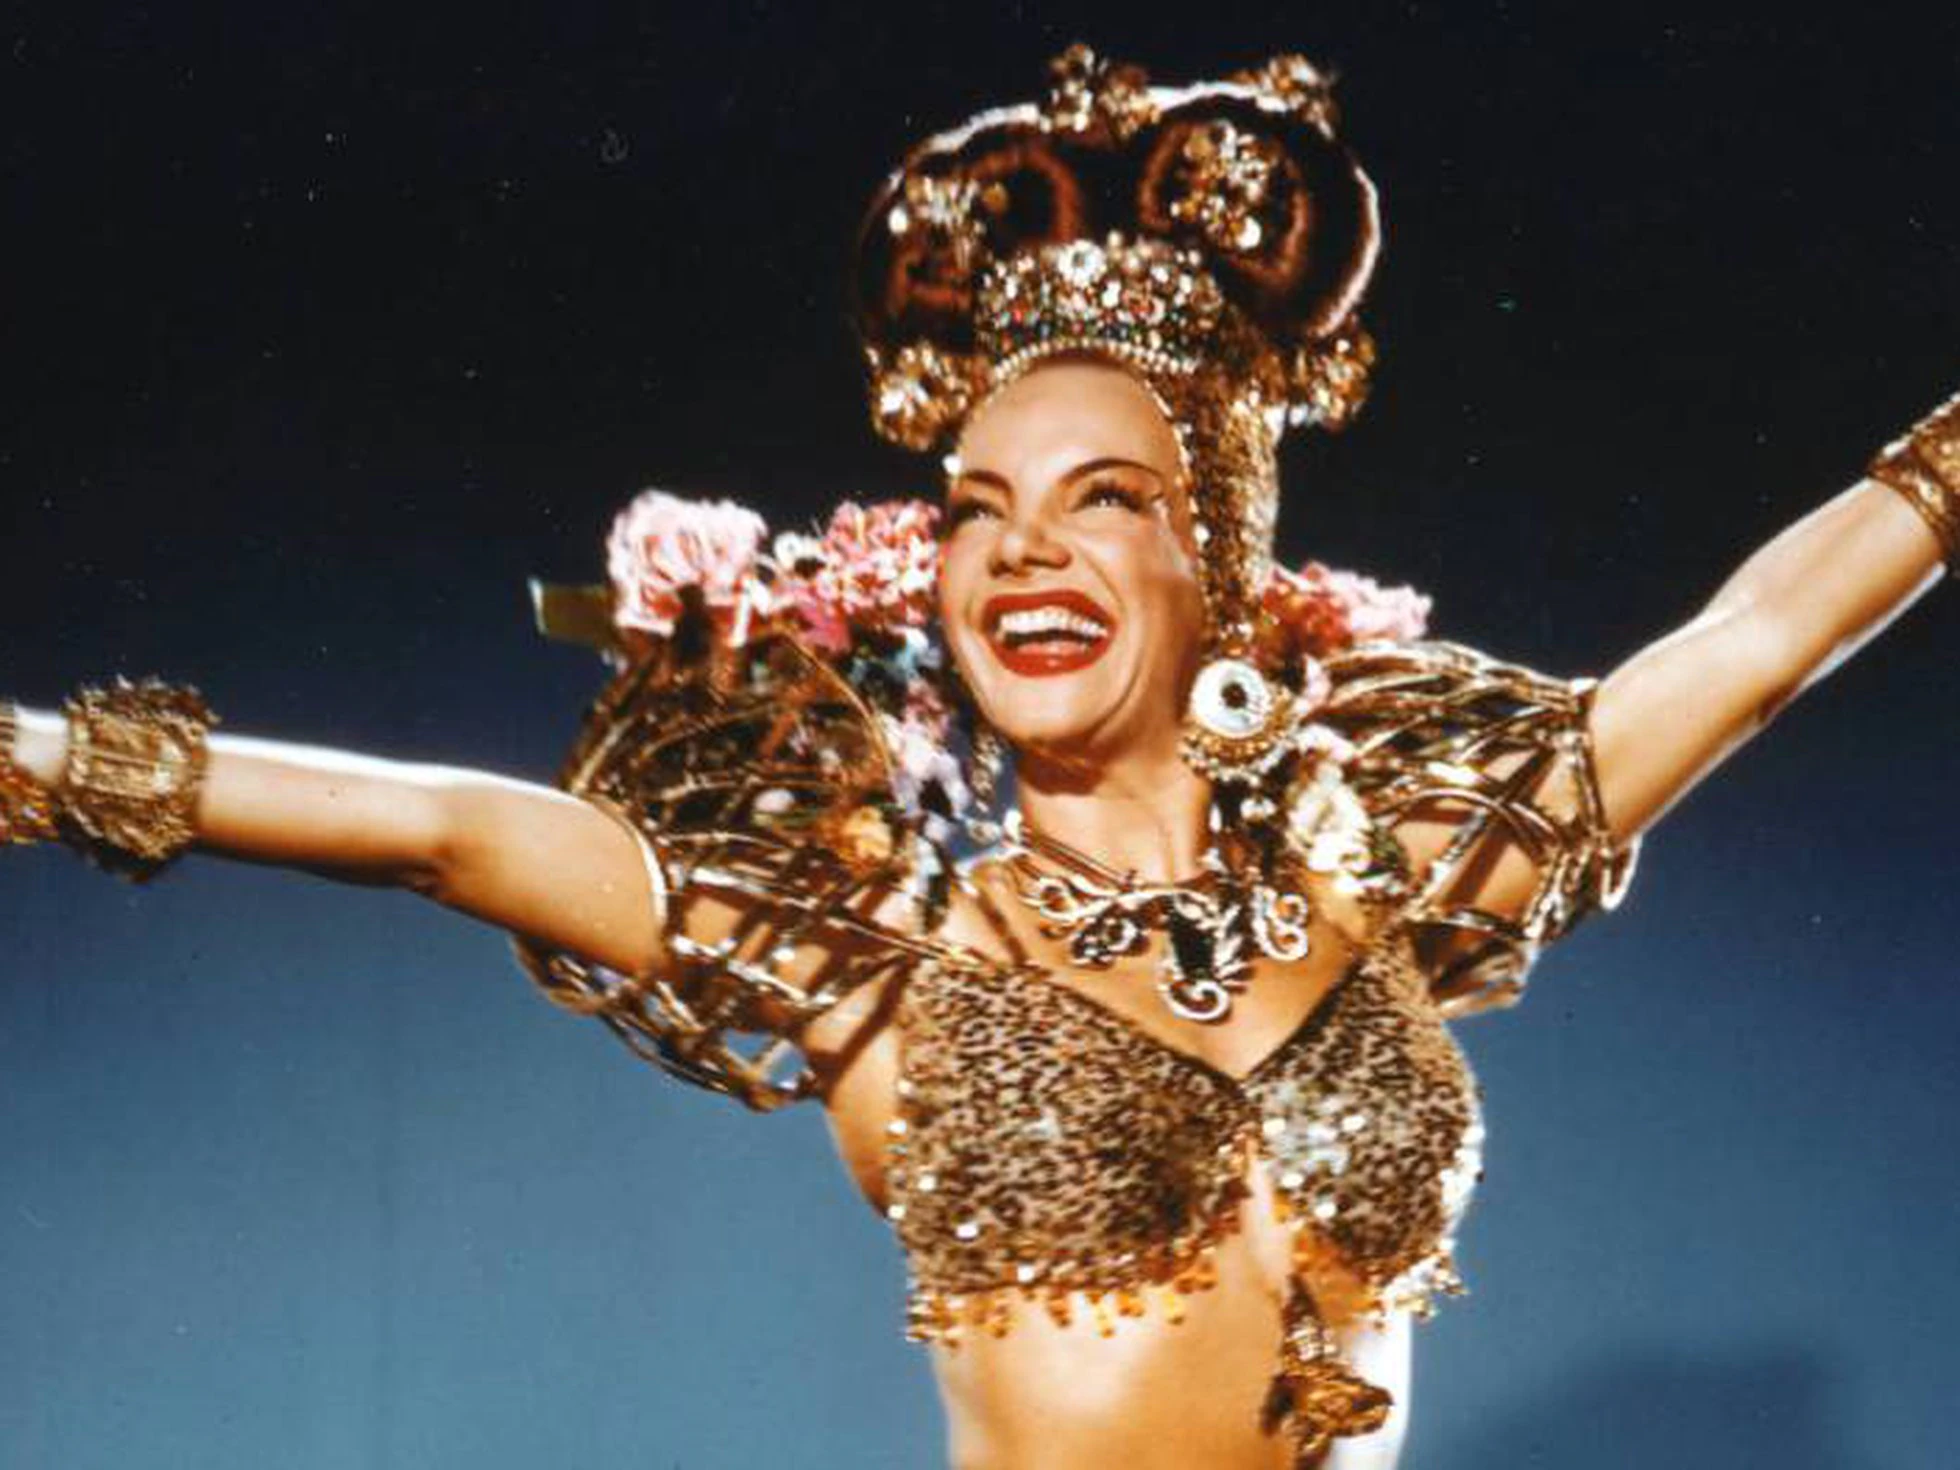 Marco celebra aniversário de Carmen Miranda com lançamento de marca de artesanato